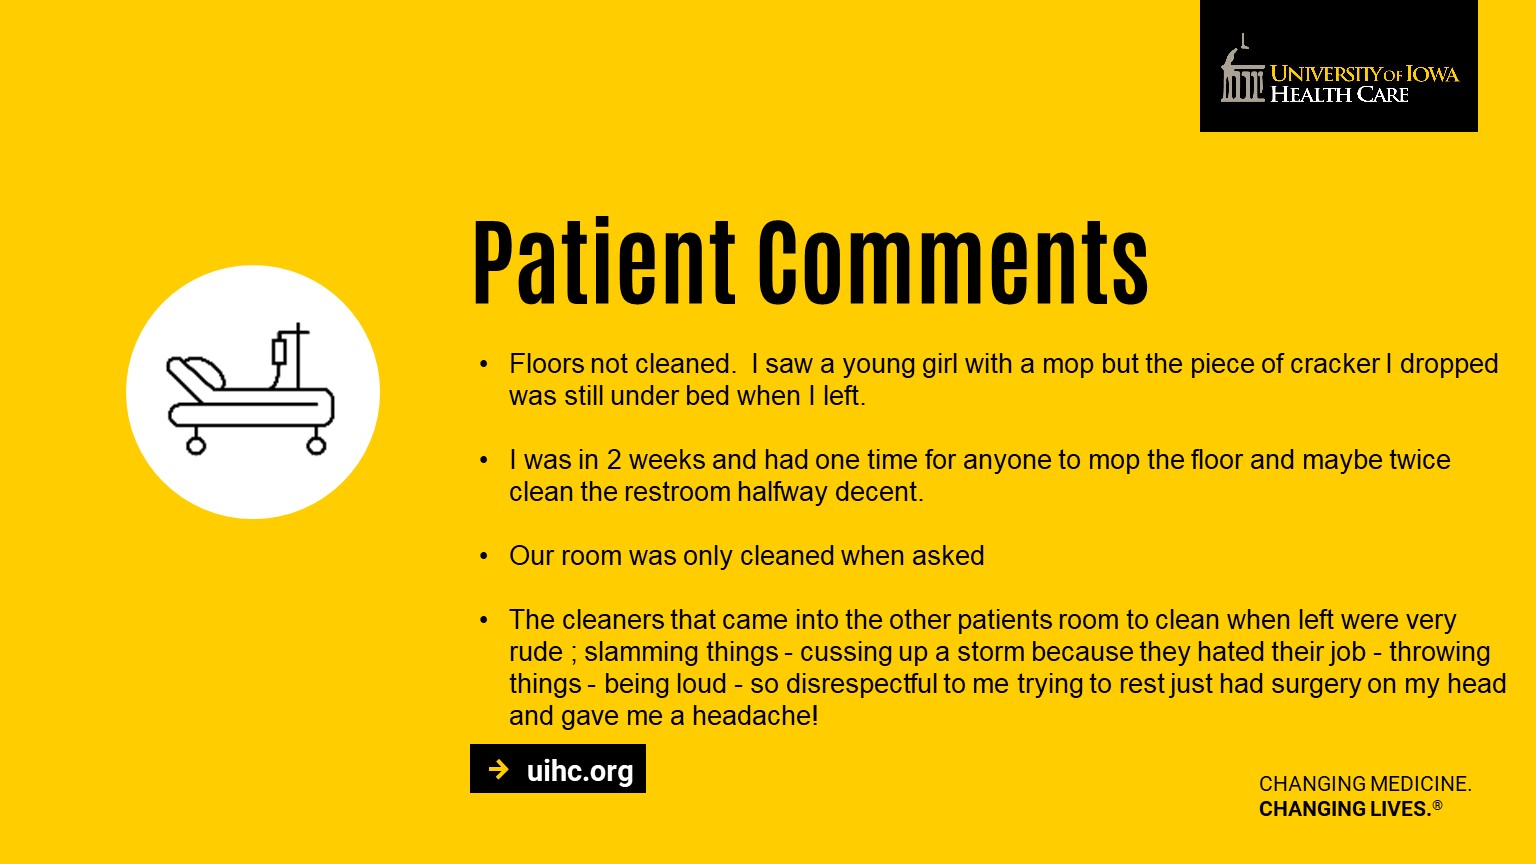 Patient Comments 11/2